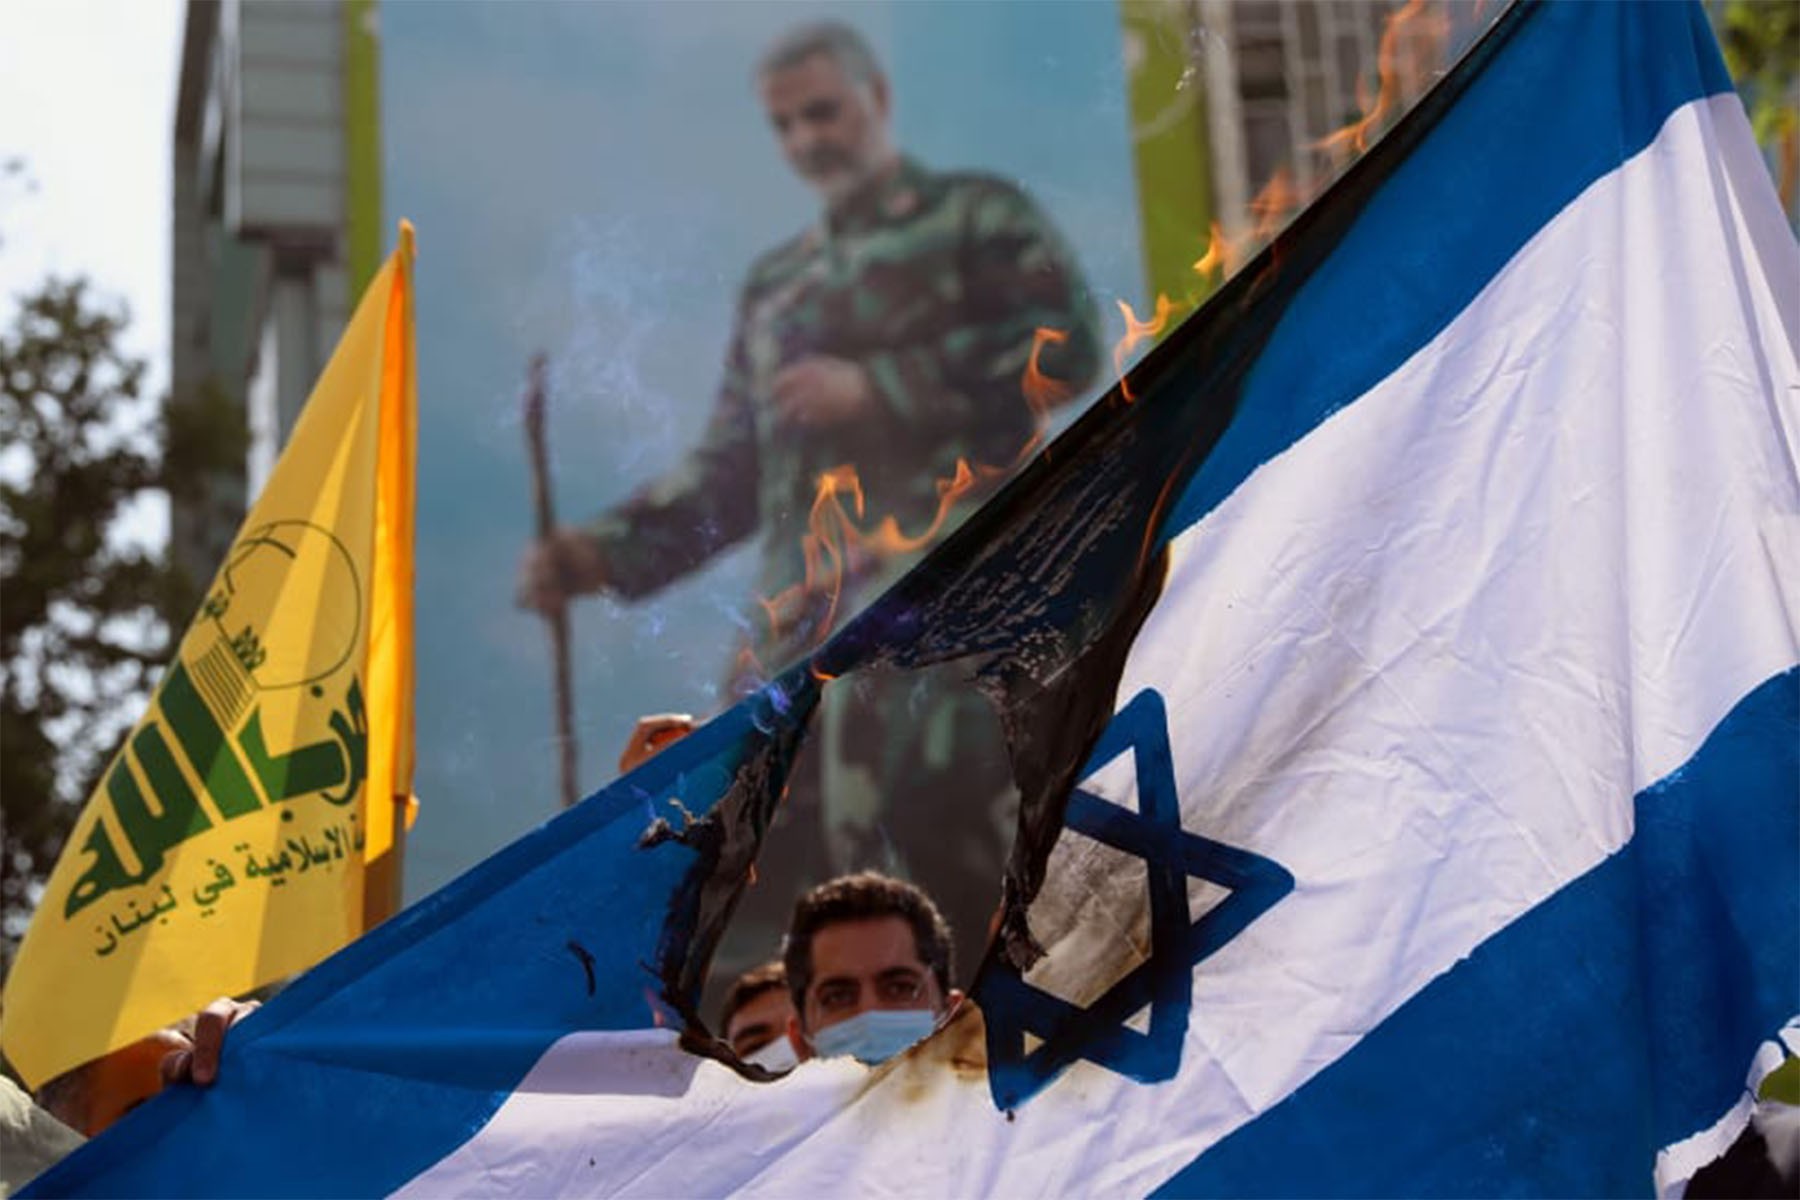 ایالات متحده سفر کارکنان خود در اسرائیل را با افزایش ترس از حمله جمهوری اسلامی محدود می کند